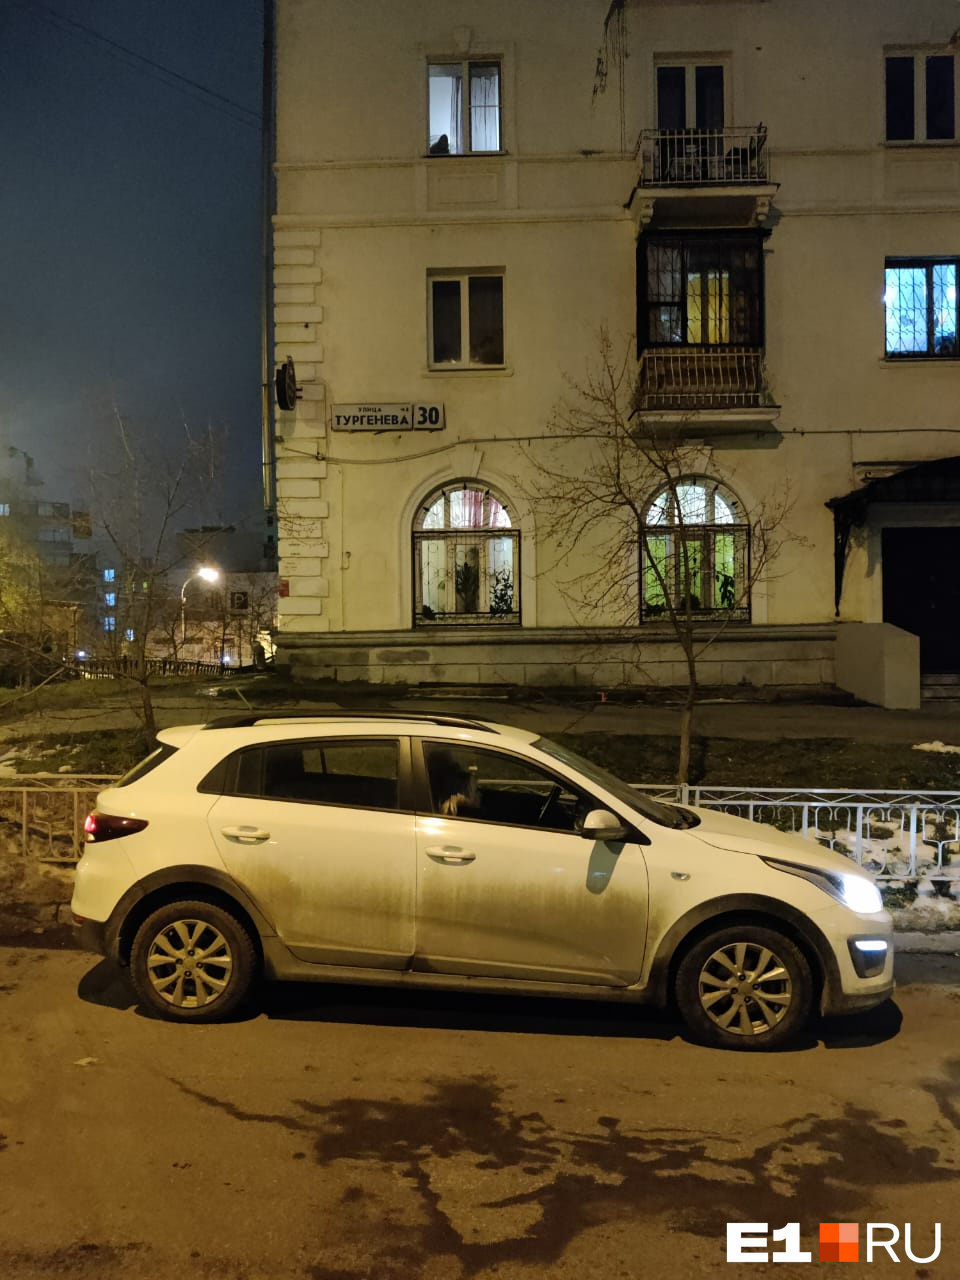 В Екатеринбурге объявились автоворы. Они крадут одну странную вещь